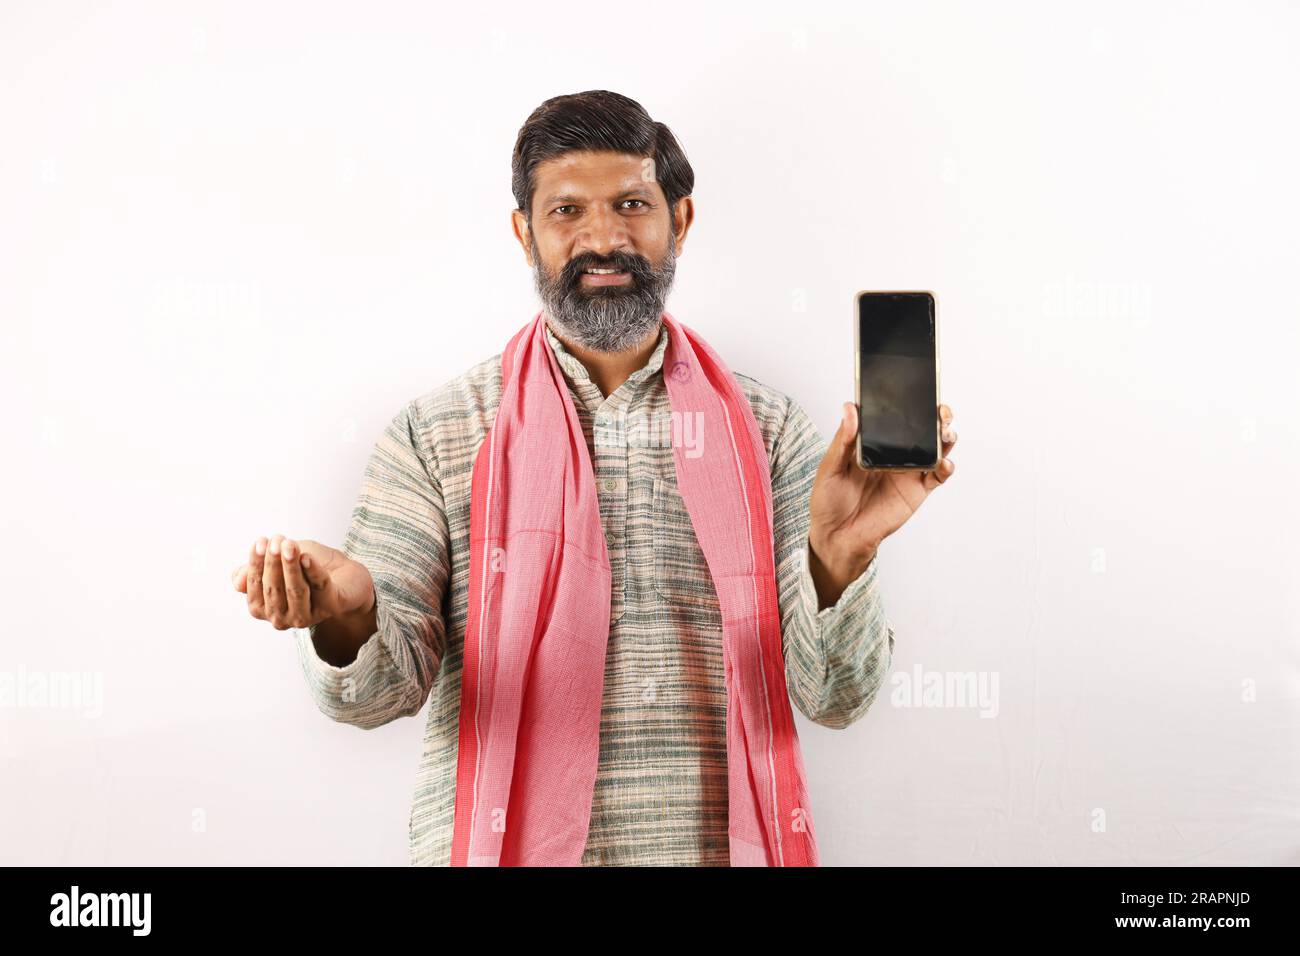 Fröhlicher Landwirt, der den Bildschirm des Mobiltelefons zeigt und Technologie verwendet. Samen in der anderen Hand. Glücklicher indischer bärtiger Bauer im ländlichen Indien Konzept. Stockfoto